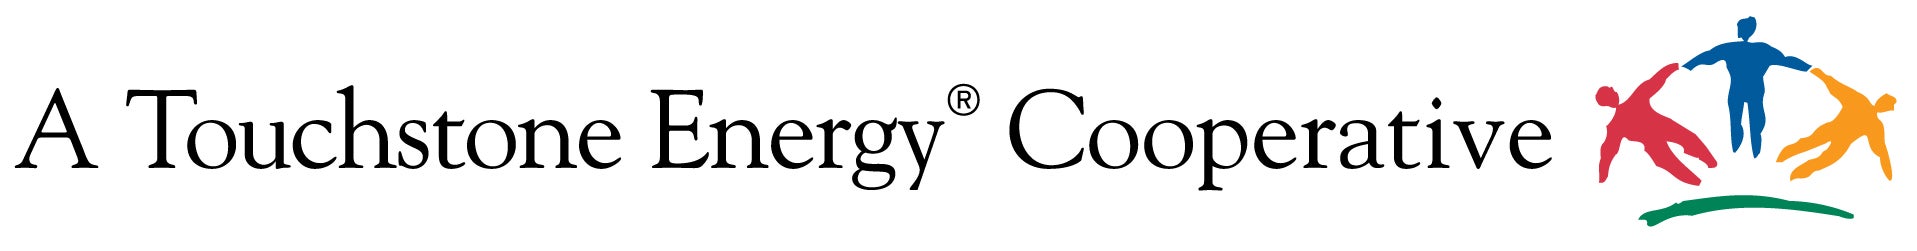 Touchstone Energy logo